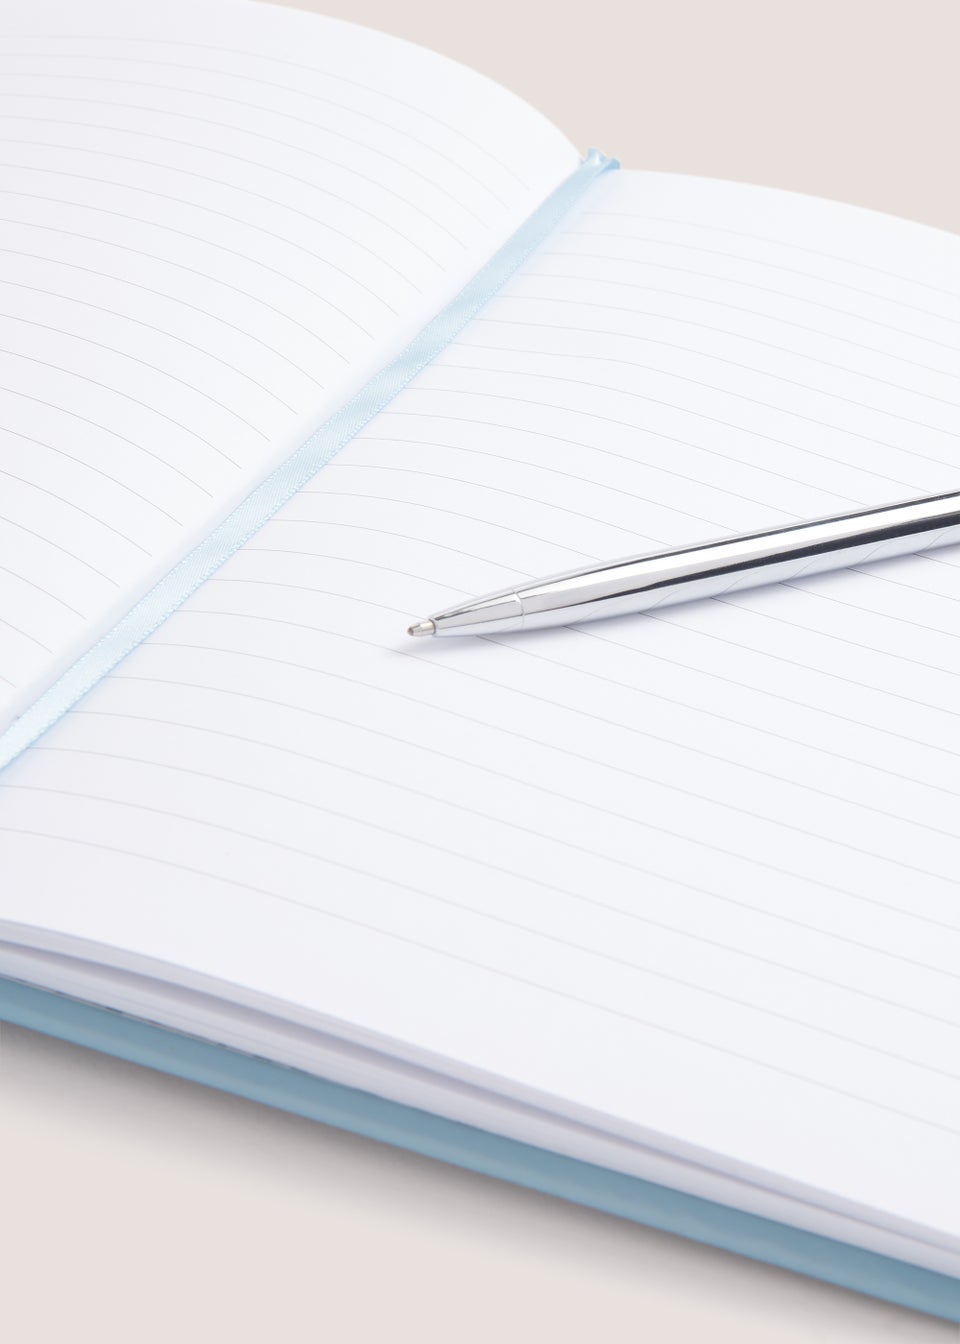 Blue Dog Notebook & Pen Set (22cm x 15.5cm x 1.5cm)